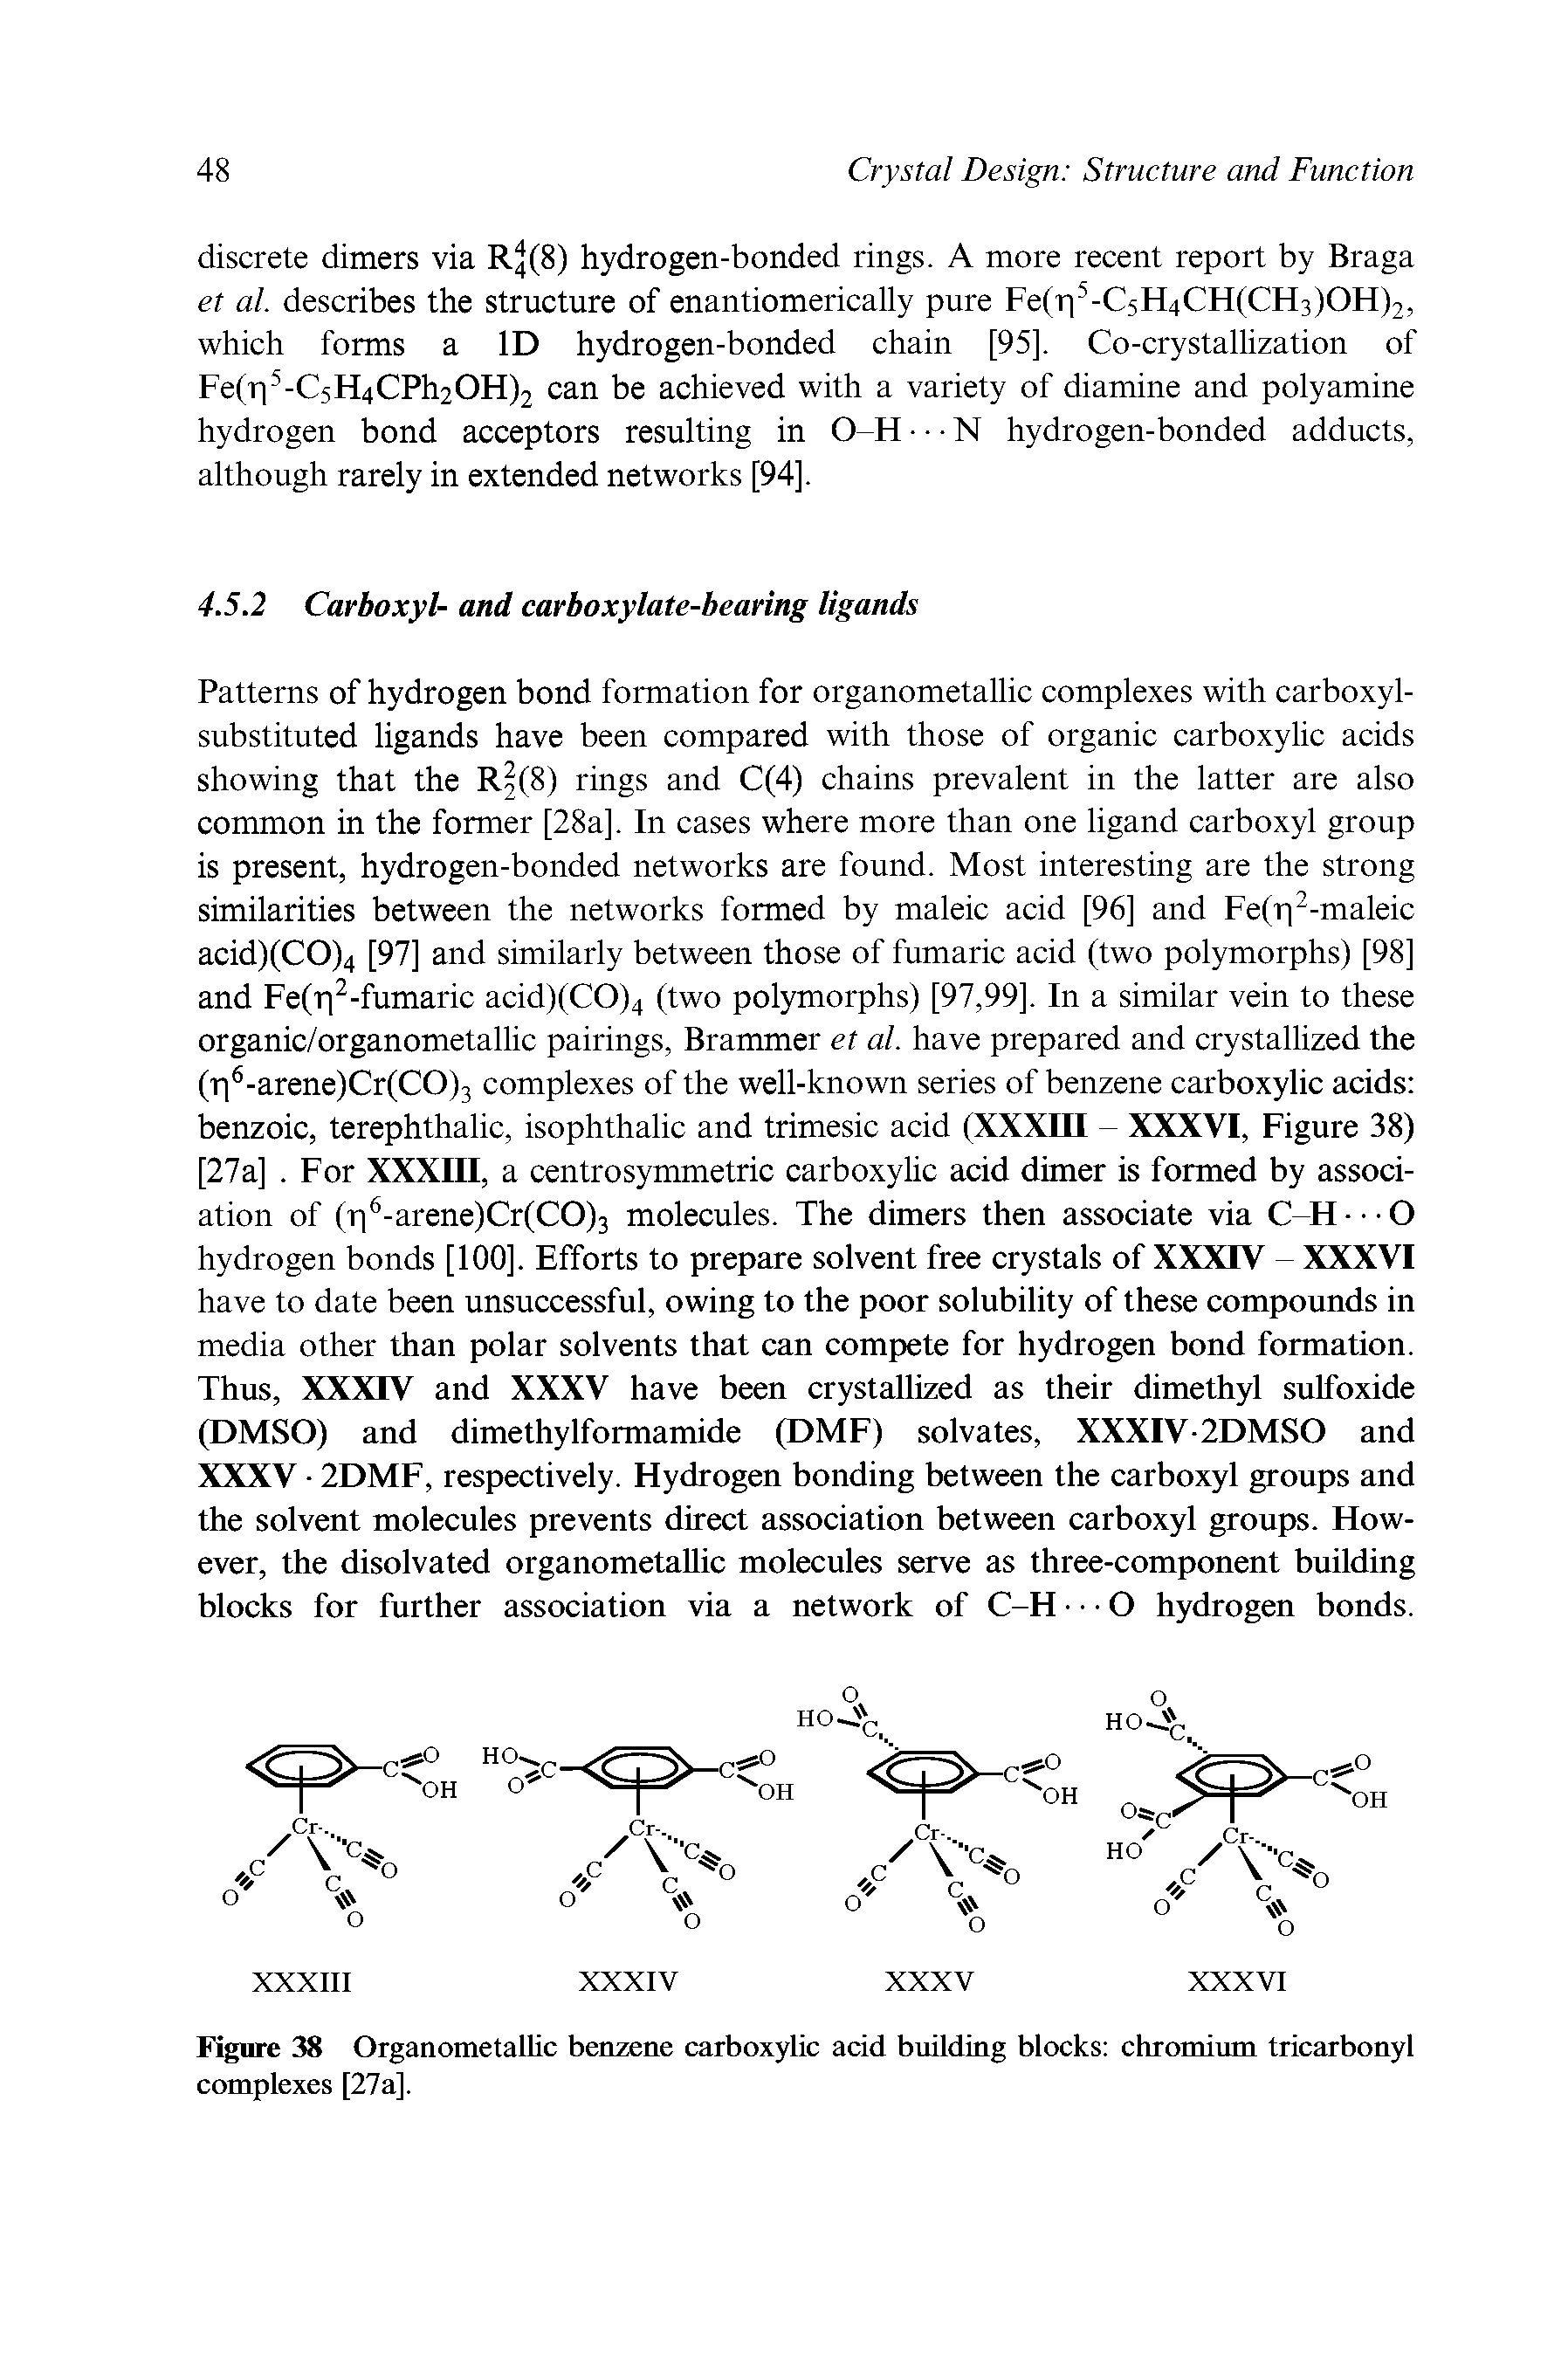 Figure 38 Organometallic benzene carboxylic acid building blocks chromium tricarbonyl complexes [27a].